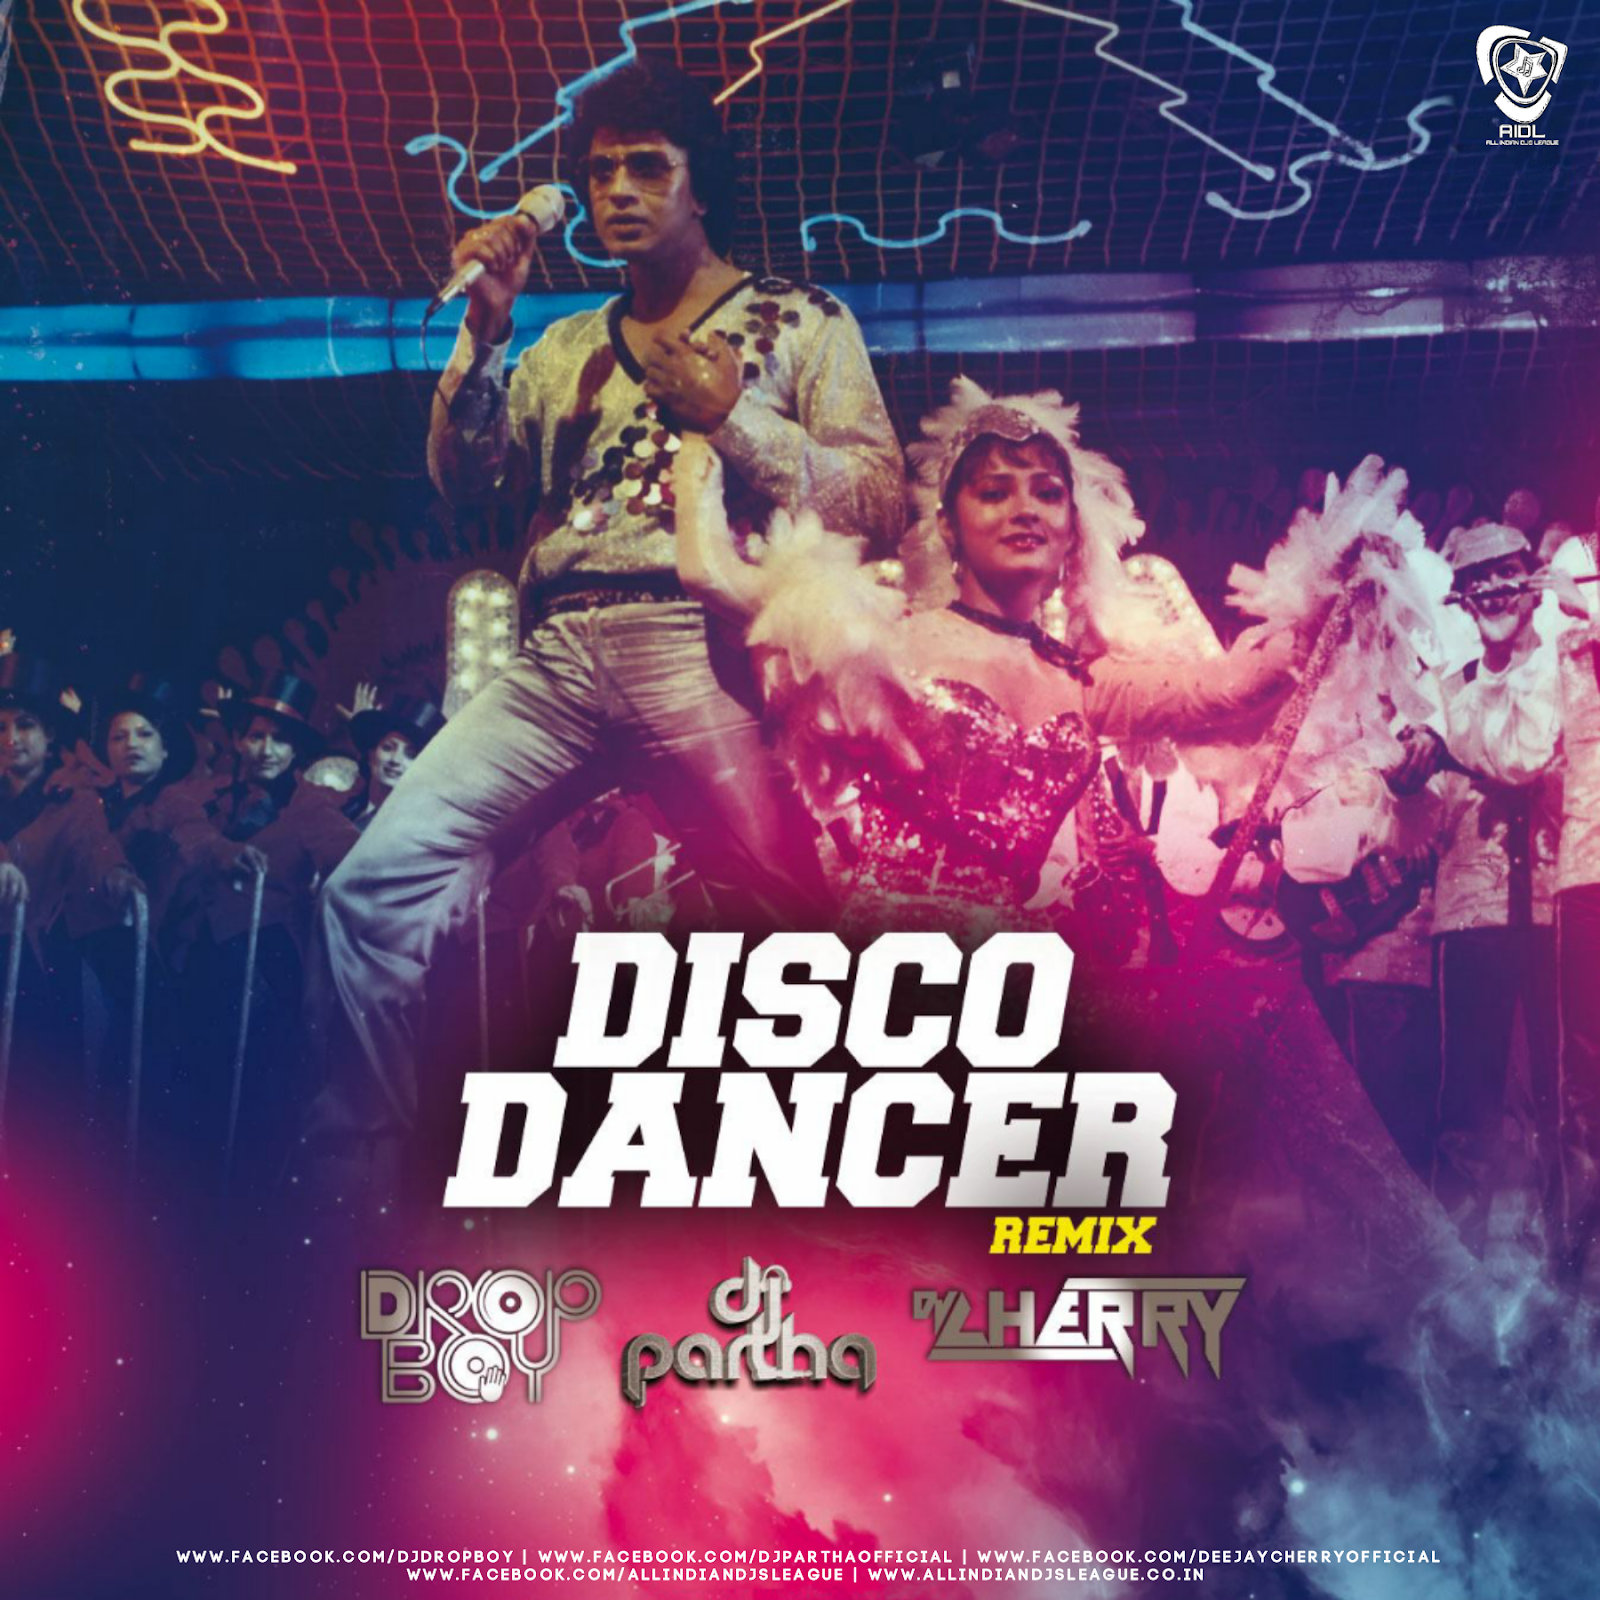 Танцор диско. Диско денсер. «Танцор диско» / Disco Dancer. Танцовщица диско. Disco dance remix